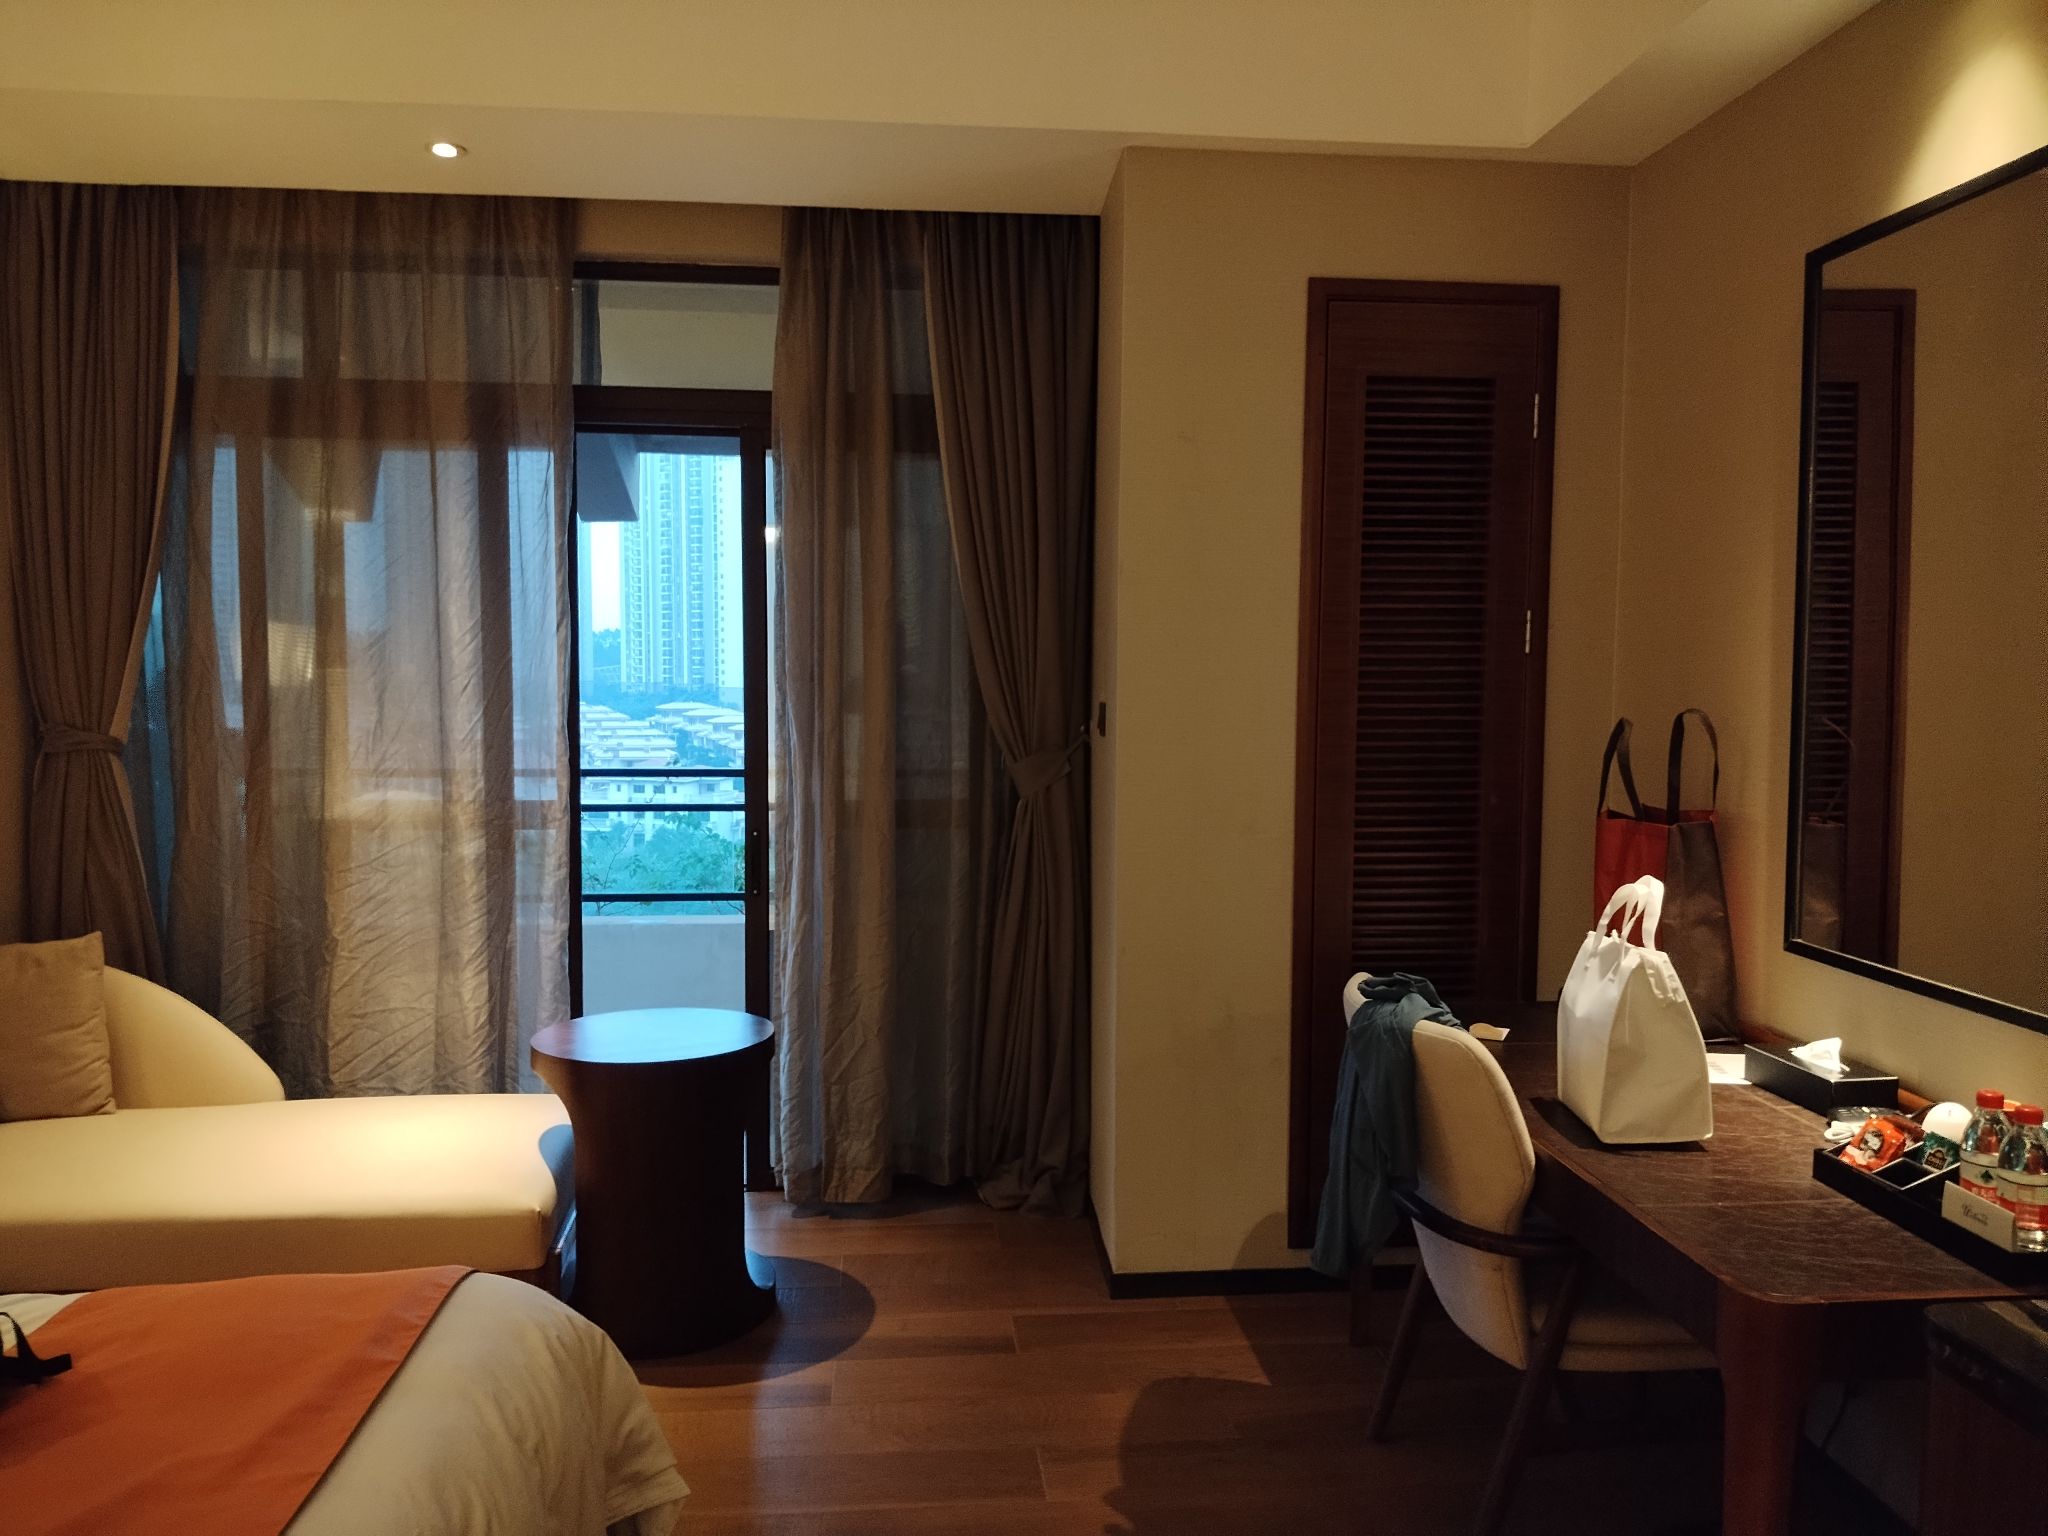 这家碧桂园凤凰城酒店房间还可以，比较新。前台给升级到顶楼，所以视野开阔。房间宽敞，卫生间也整洁清爽。